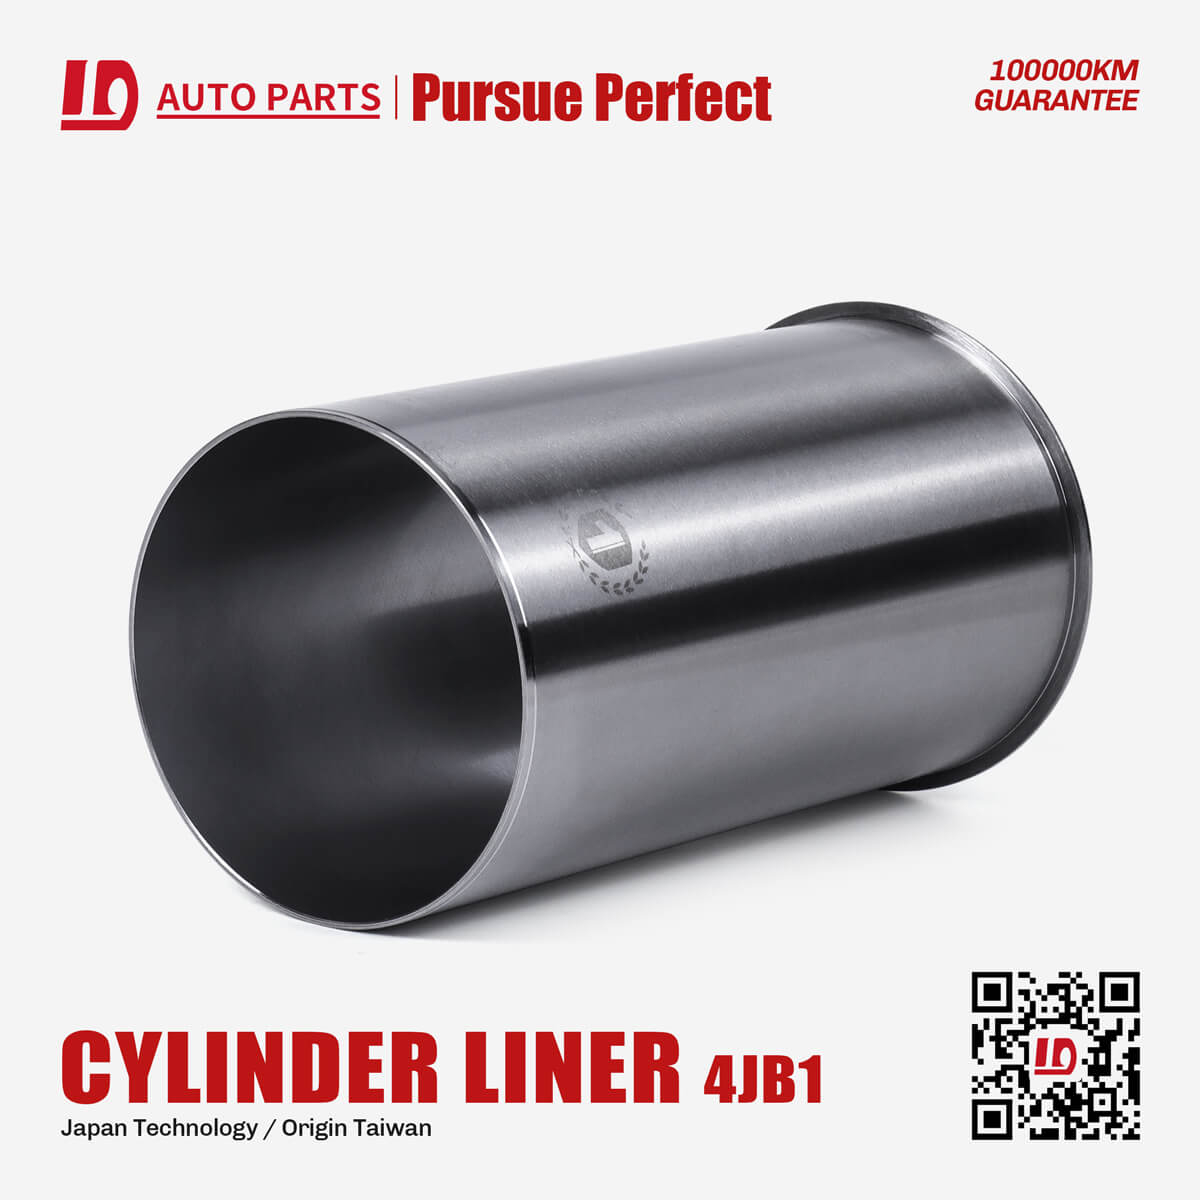 4JB1 diesel engine parts cylinder liner OEM:8-97176-685-0 cylinder liner